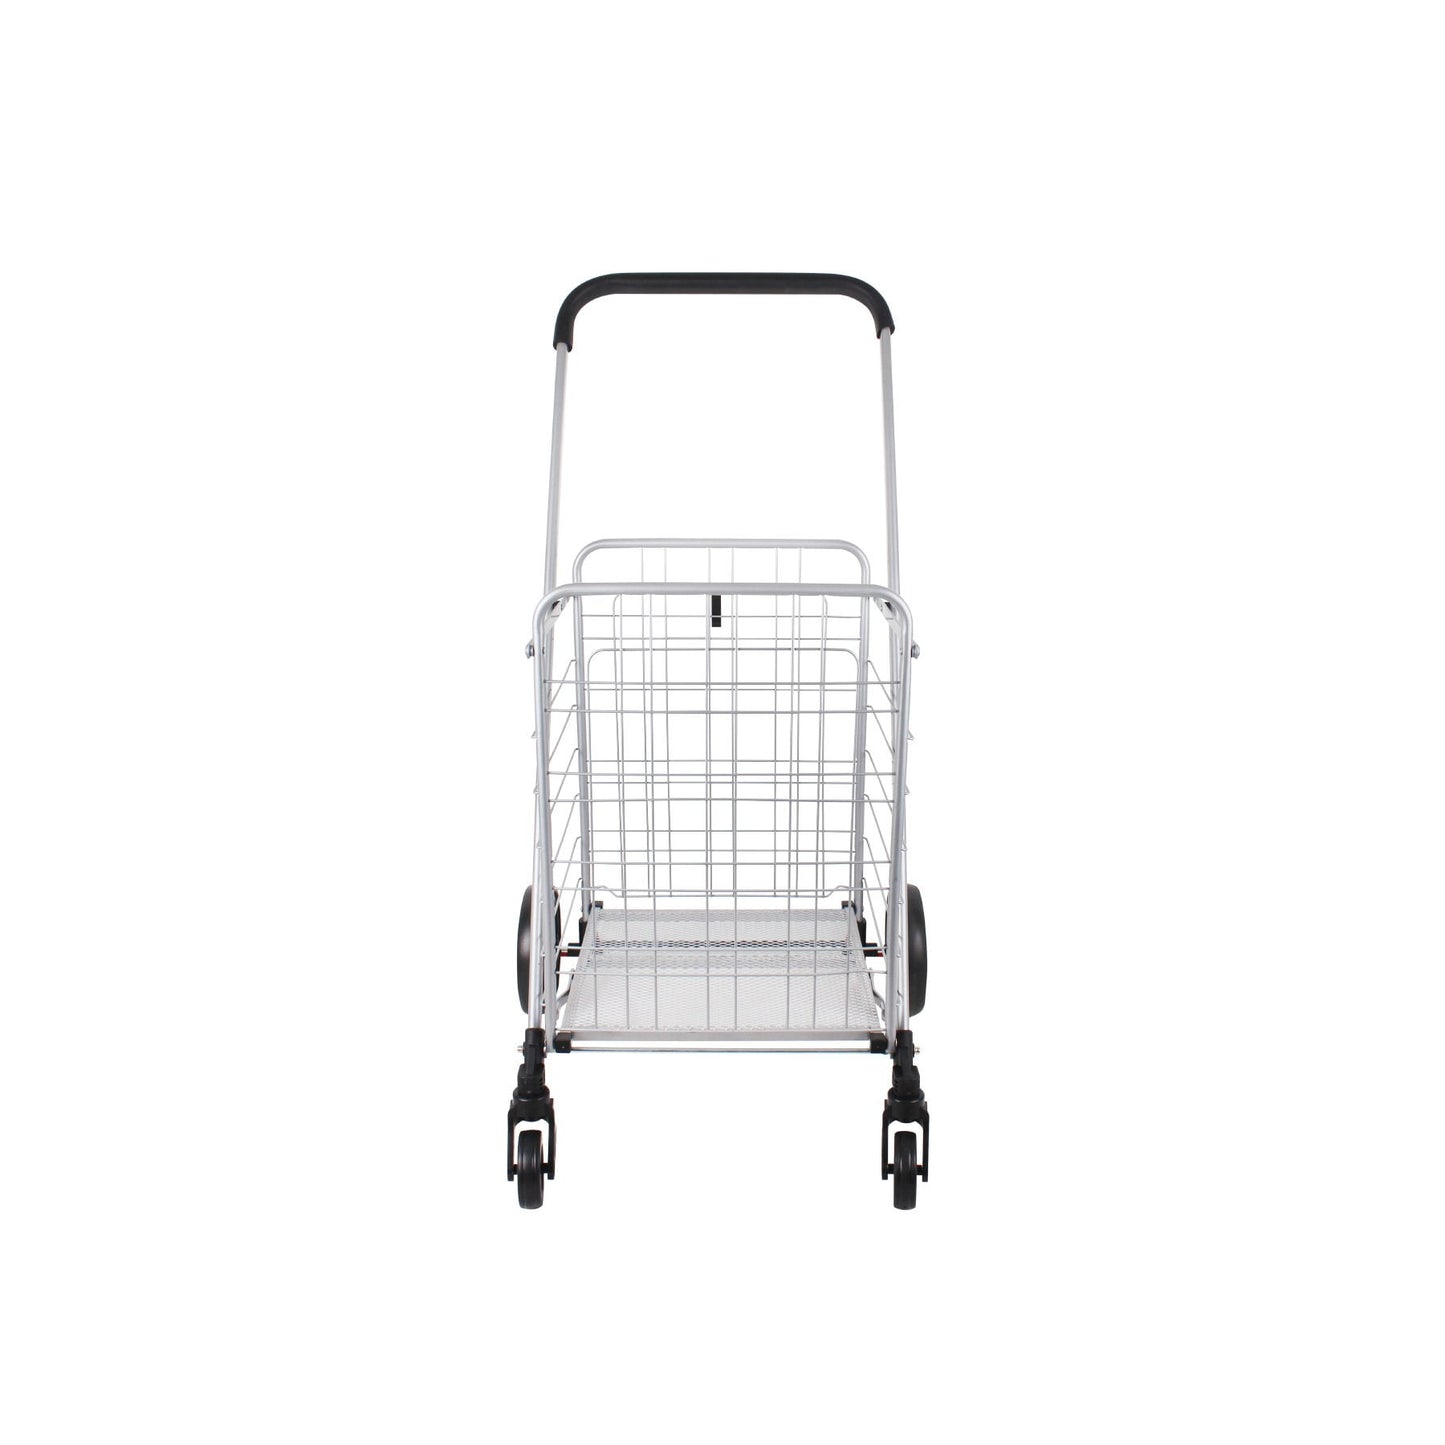 Handy Basket Cart Small